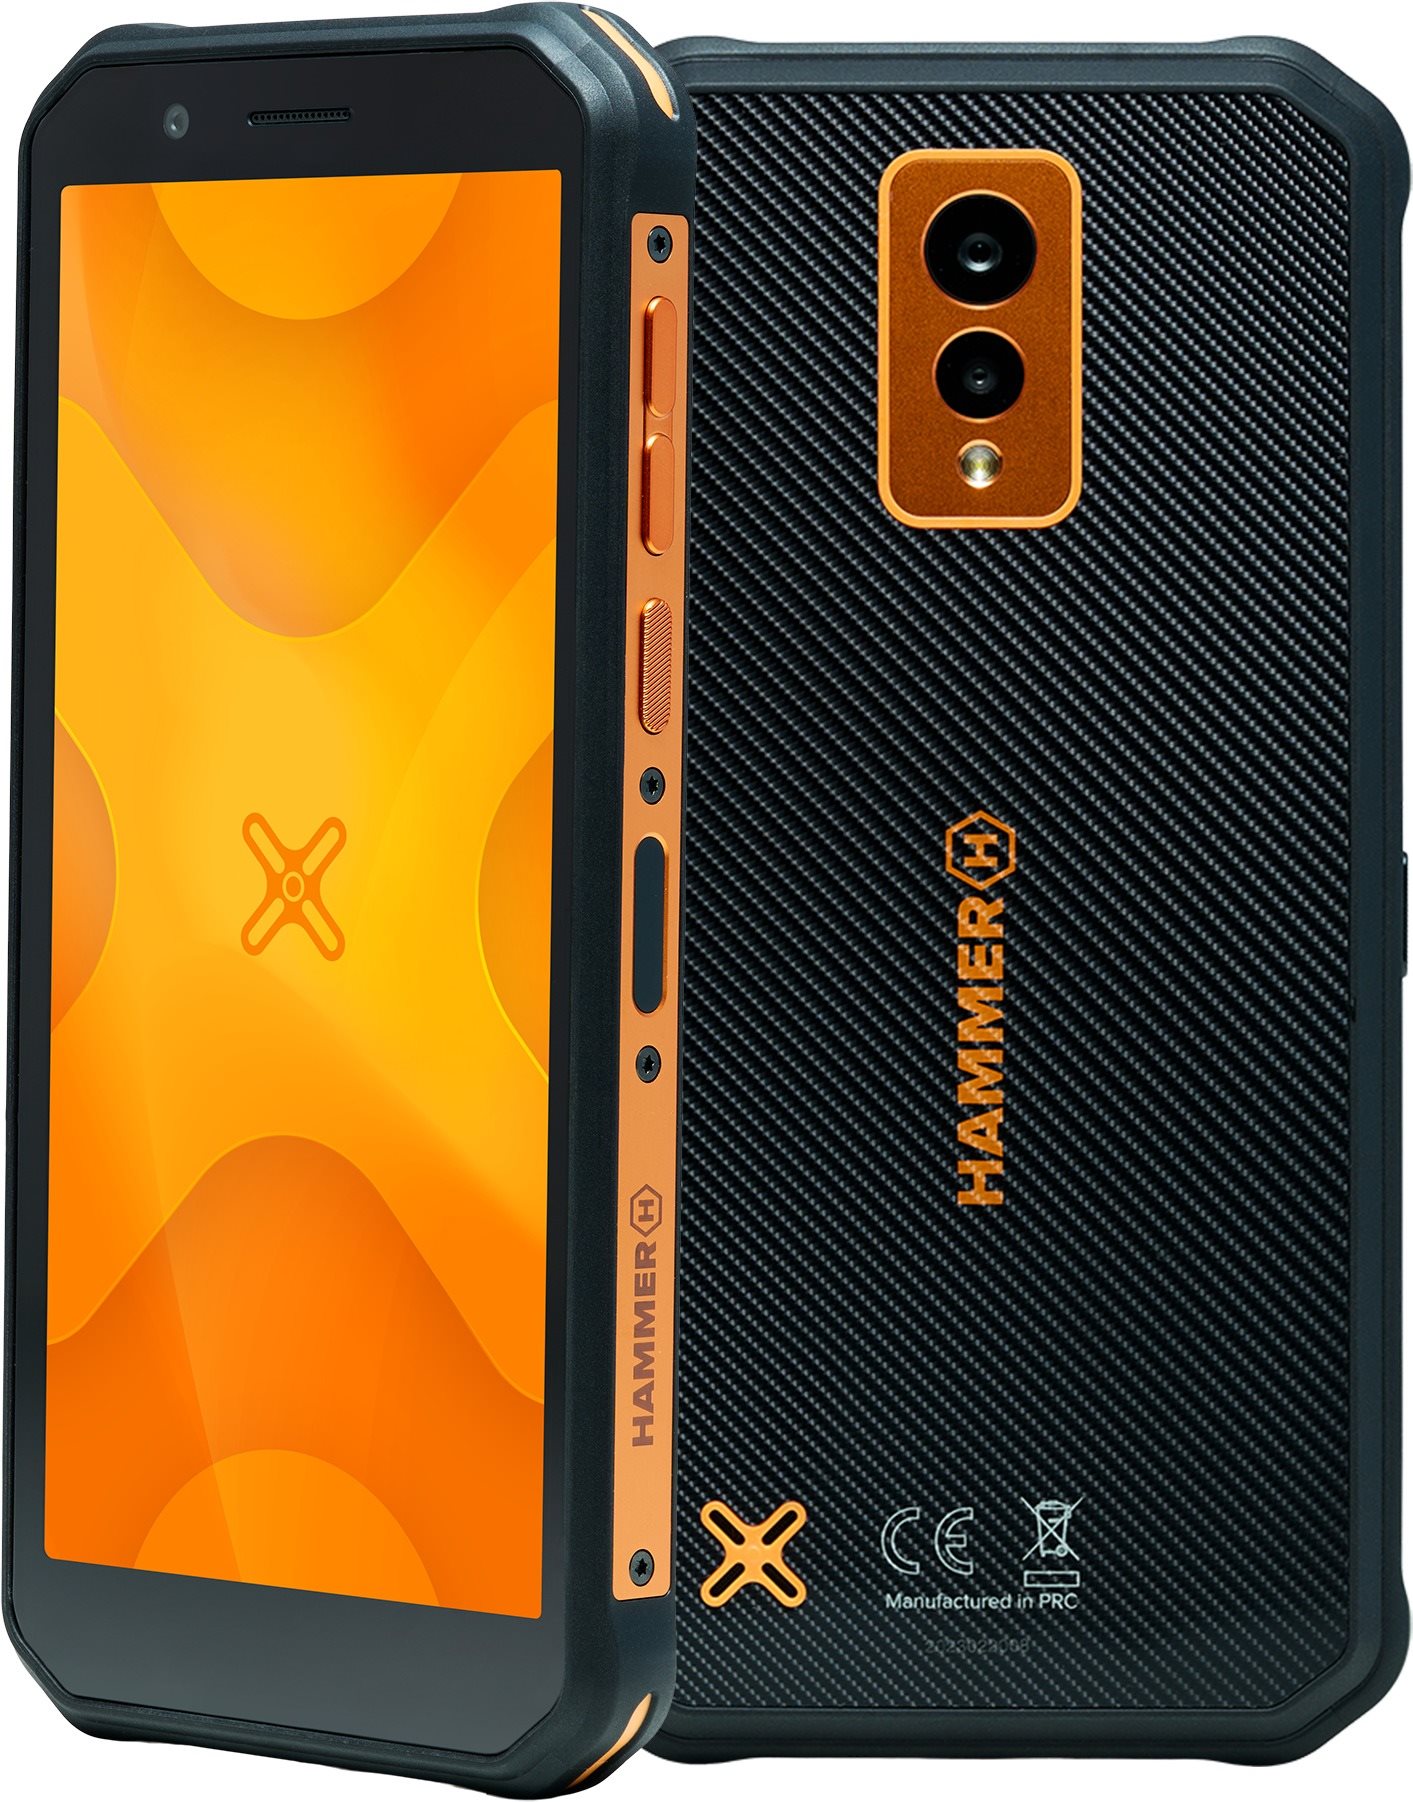 myPhone Hammer Energy X narancssárga